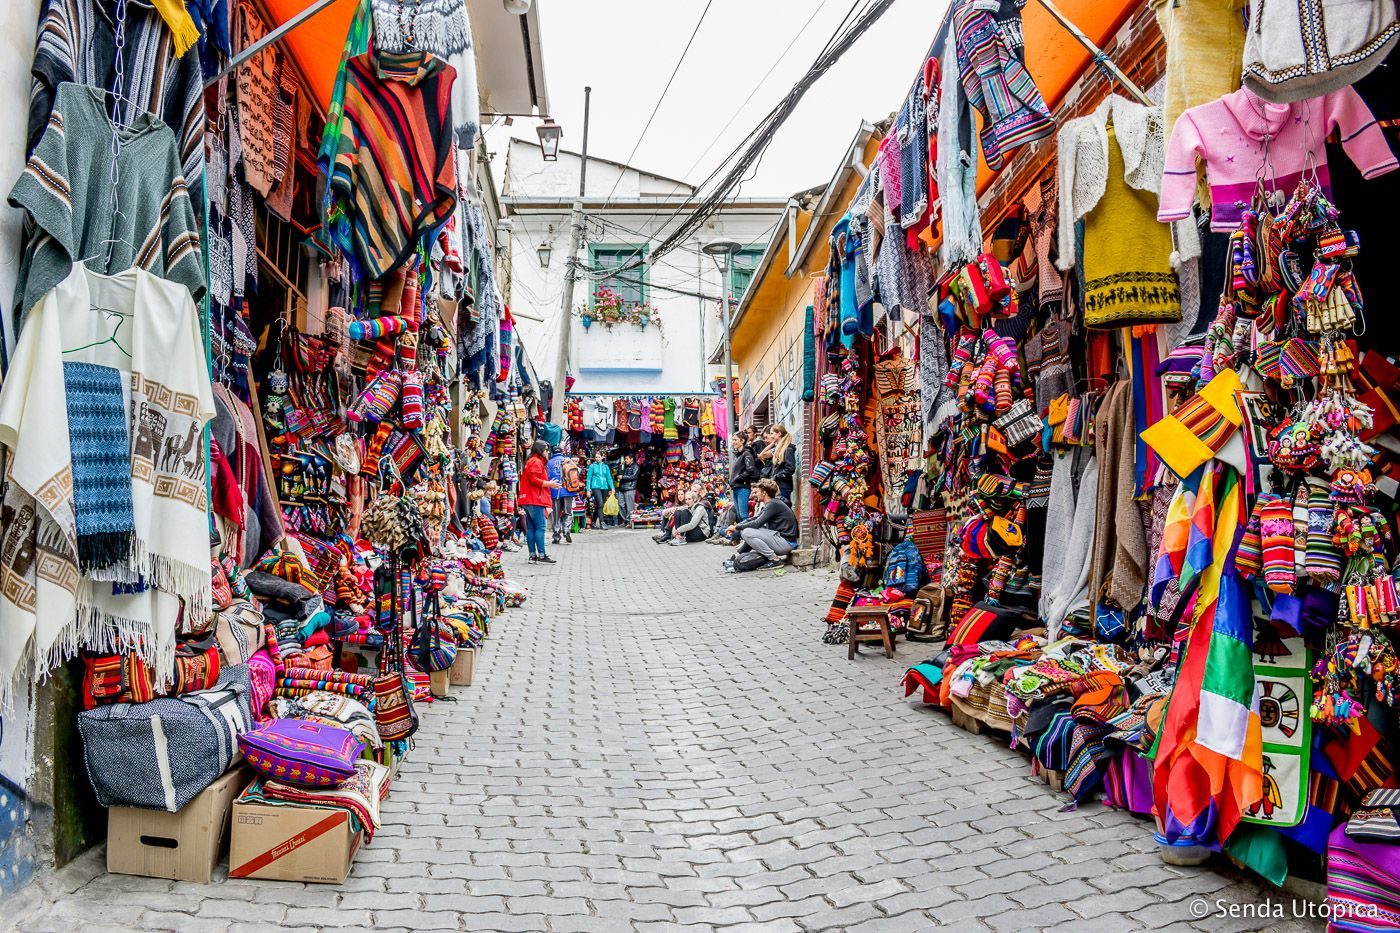 The Witches' Market(Mercado de las Brujas)